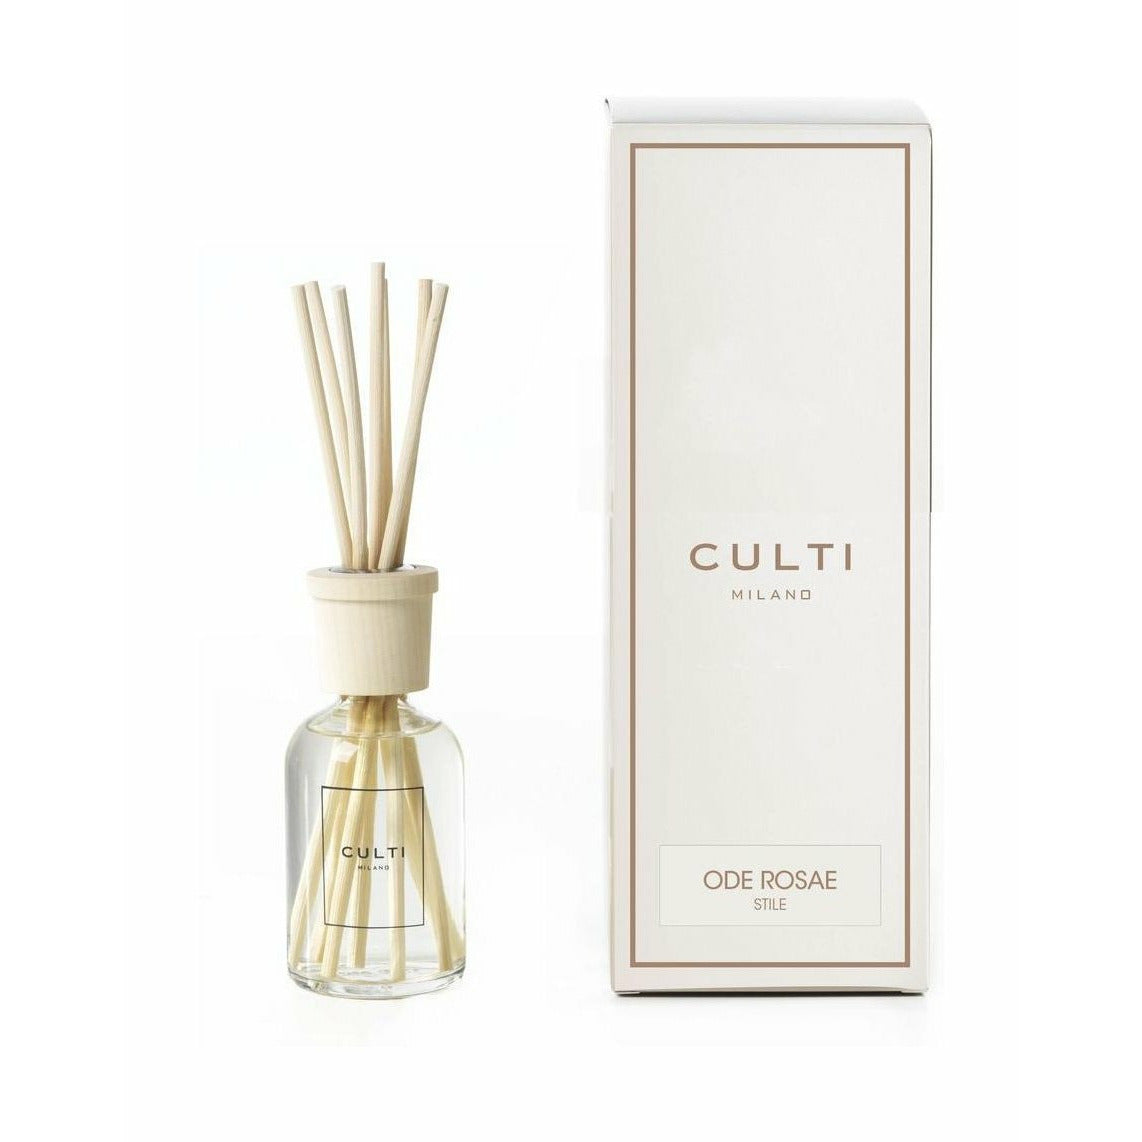 Culti Milano Stile Classic Fragrance Diffuser Oderosae, 100 Ml